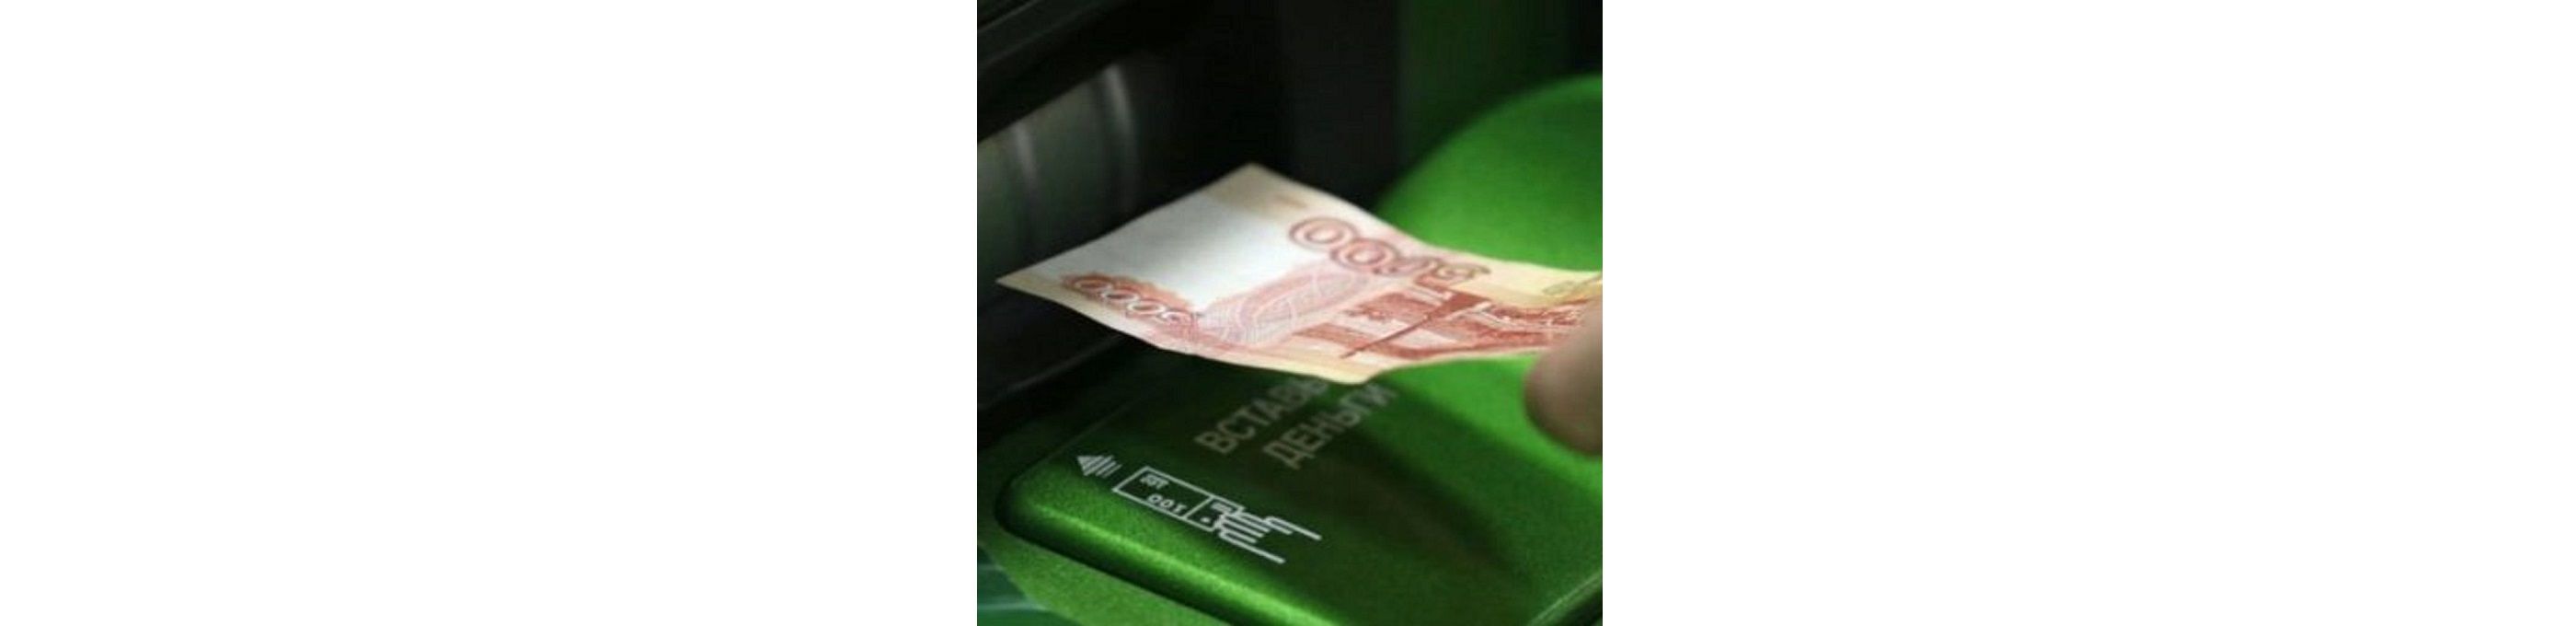 Несмотря на все меры безопасности которые предпринимаются, иногда случаи вброса фальшивых денег в банкоматы все же происходят